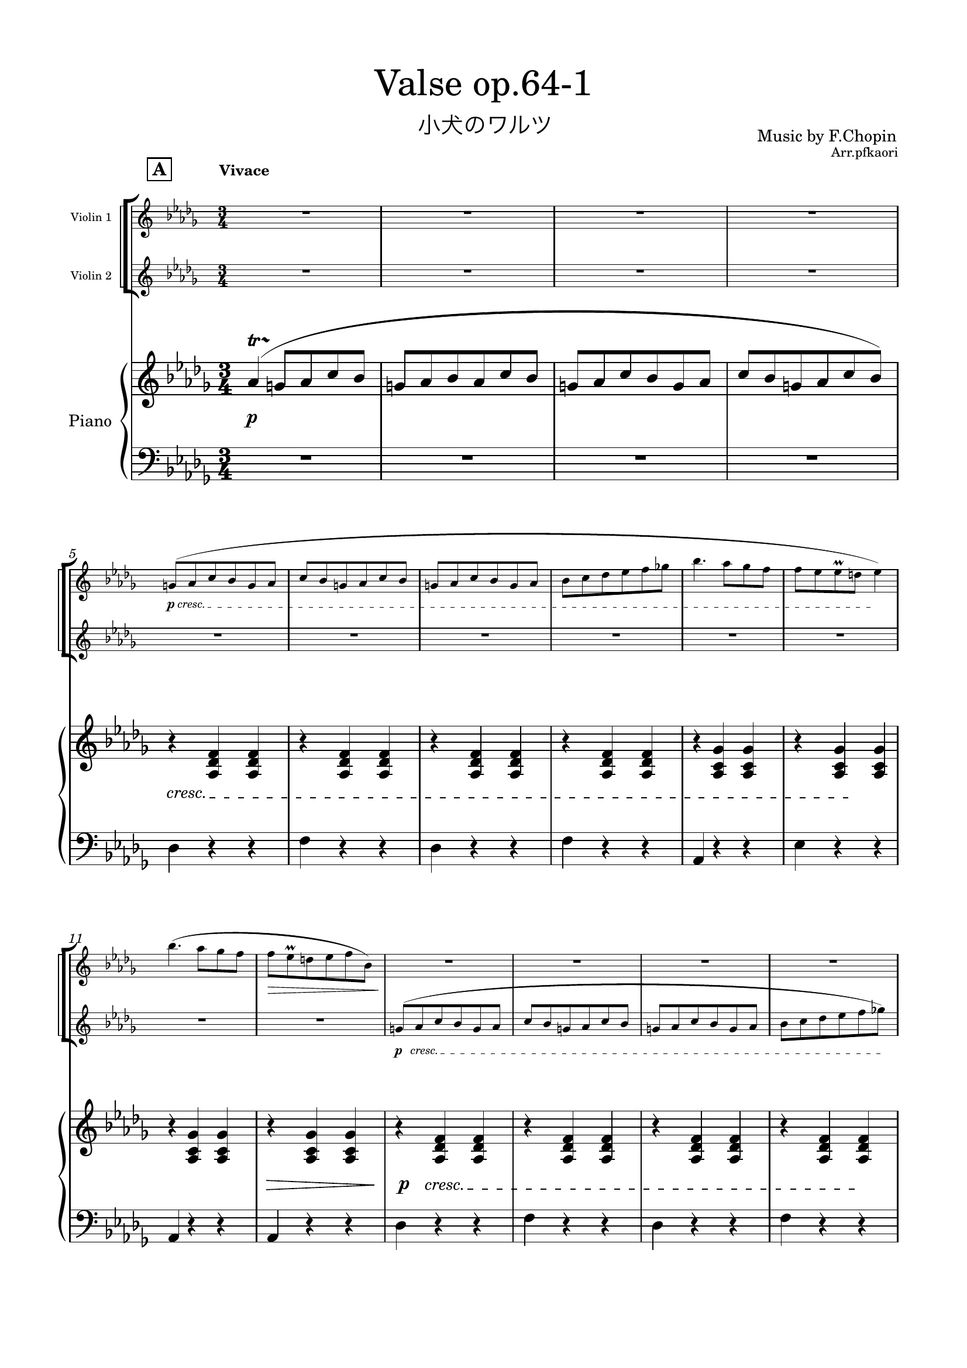 ショパン - 小犬のワルツ (２版.・D♭・ピアノトリオ/ヴァイオリンデュオ) by pfkaori